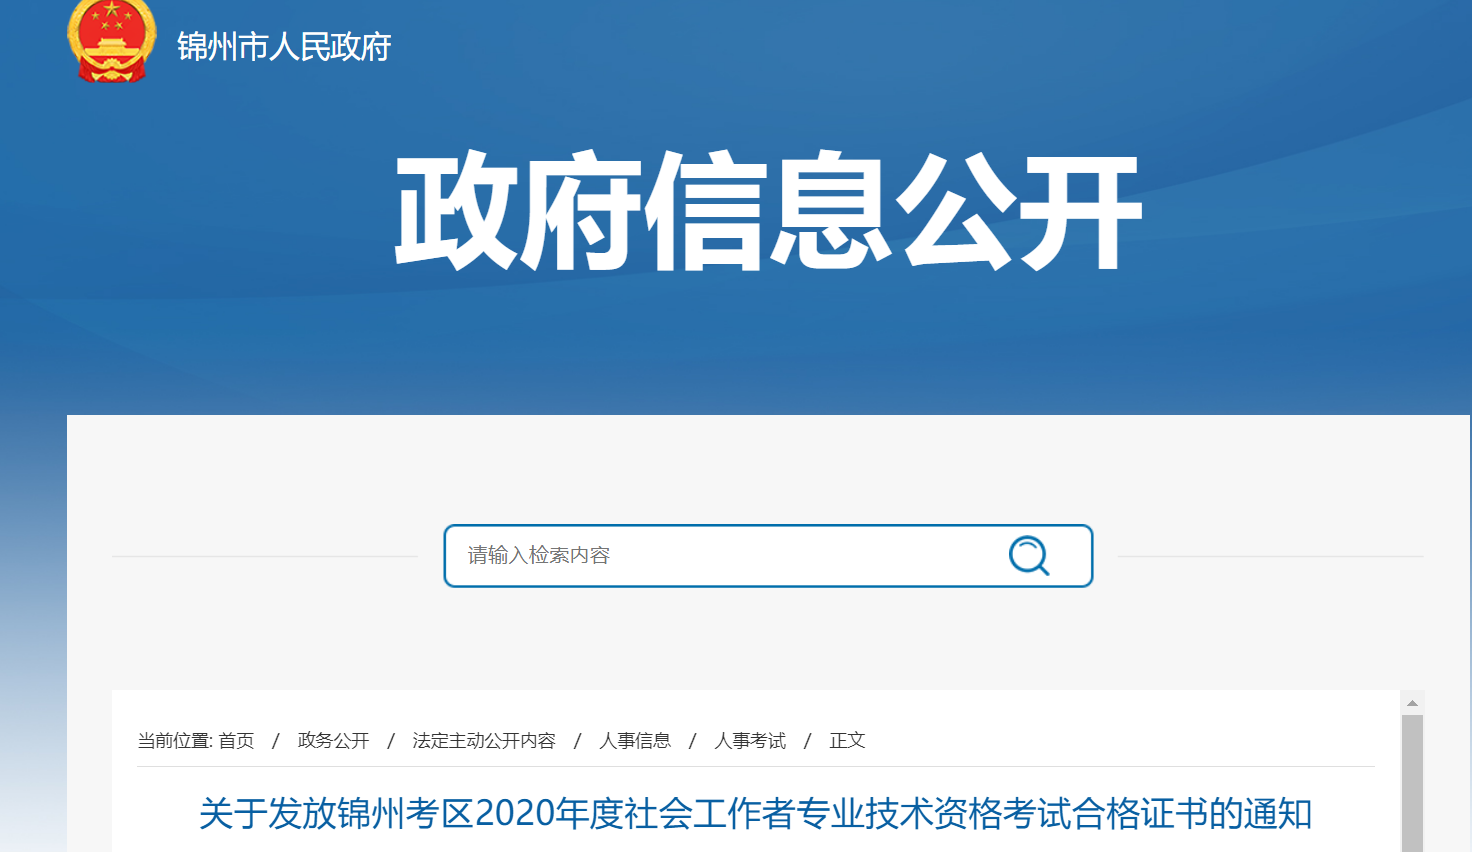 2020年辽宁锦州社会工作者专业技术资格考试合格证书领取通知